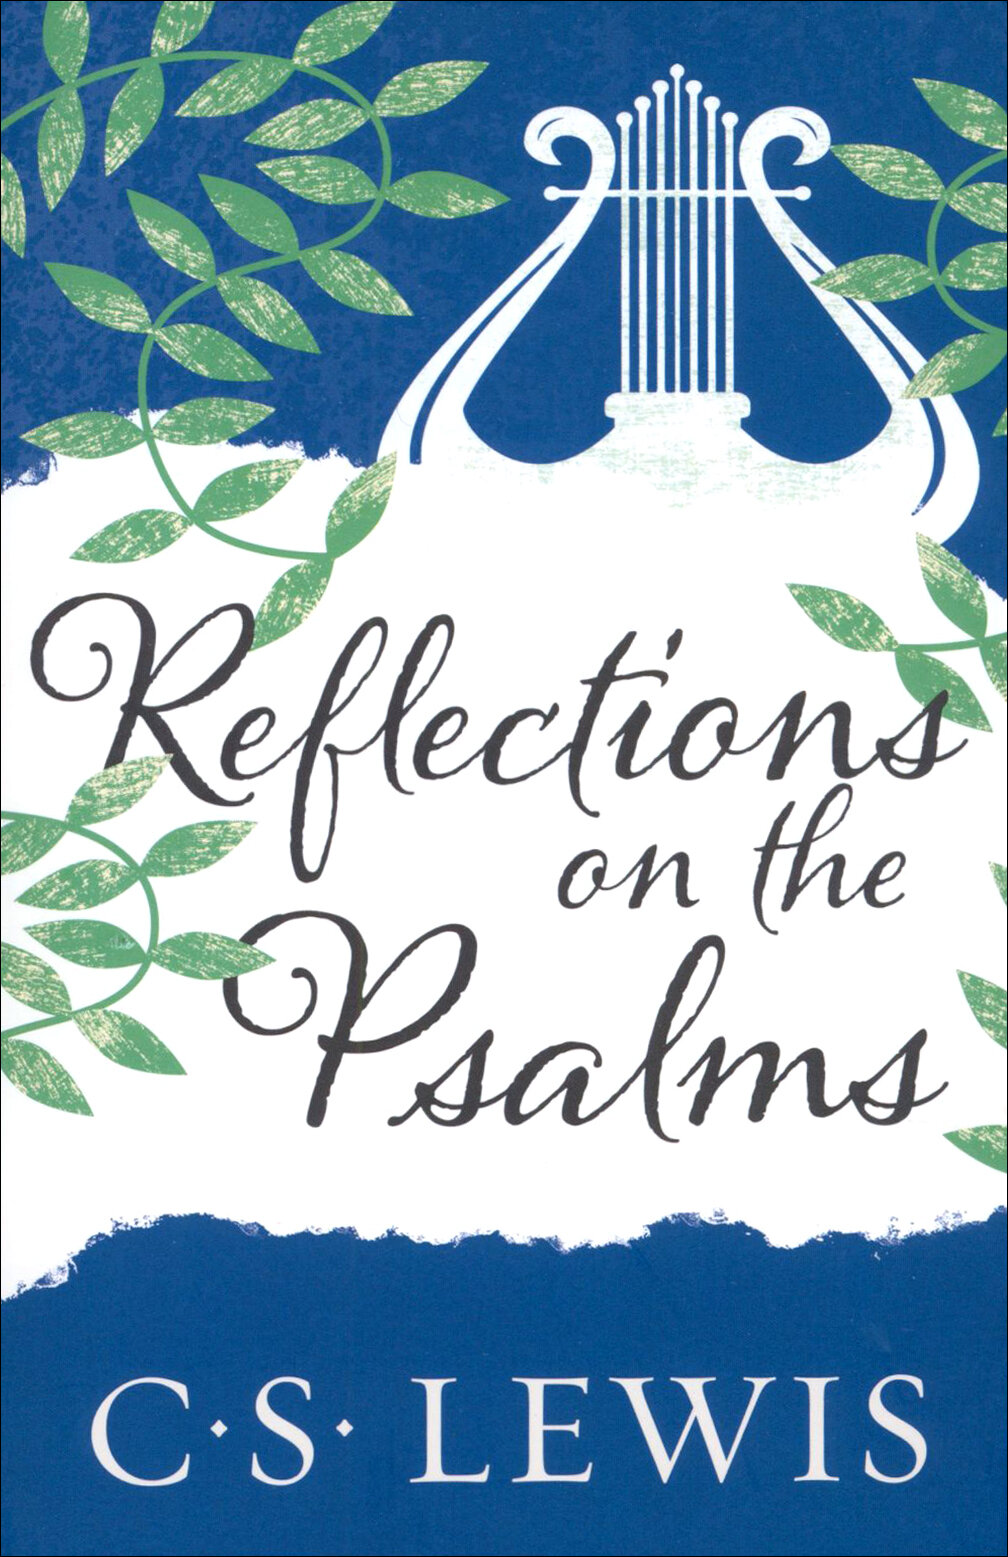 Reflections on the Psalms / Lewis Clive Staples / Книга на Английском / Размышления о псалмах / Льюис Клайв Стейплз